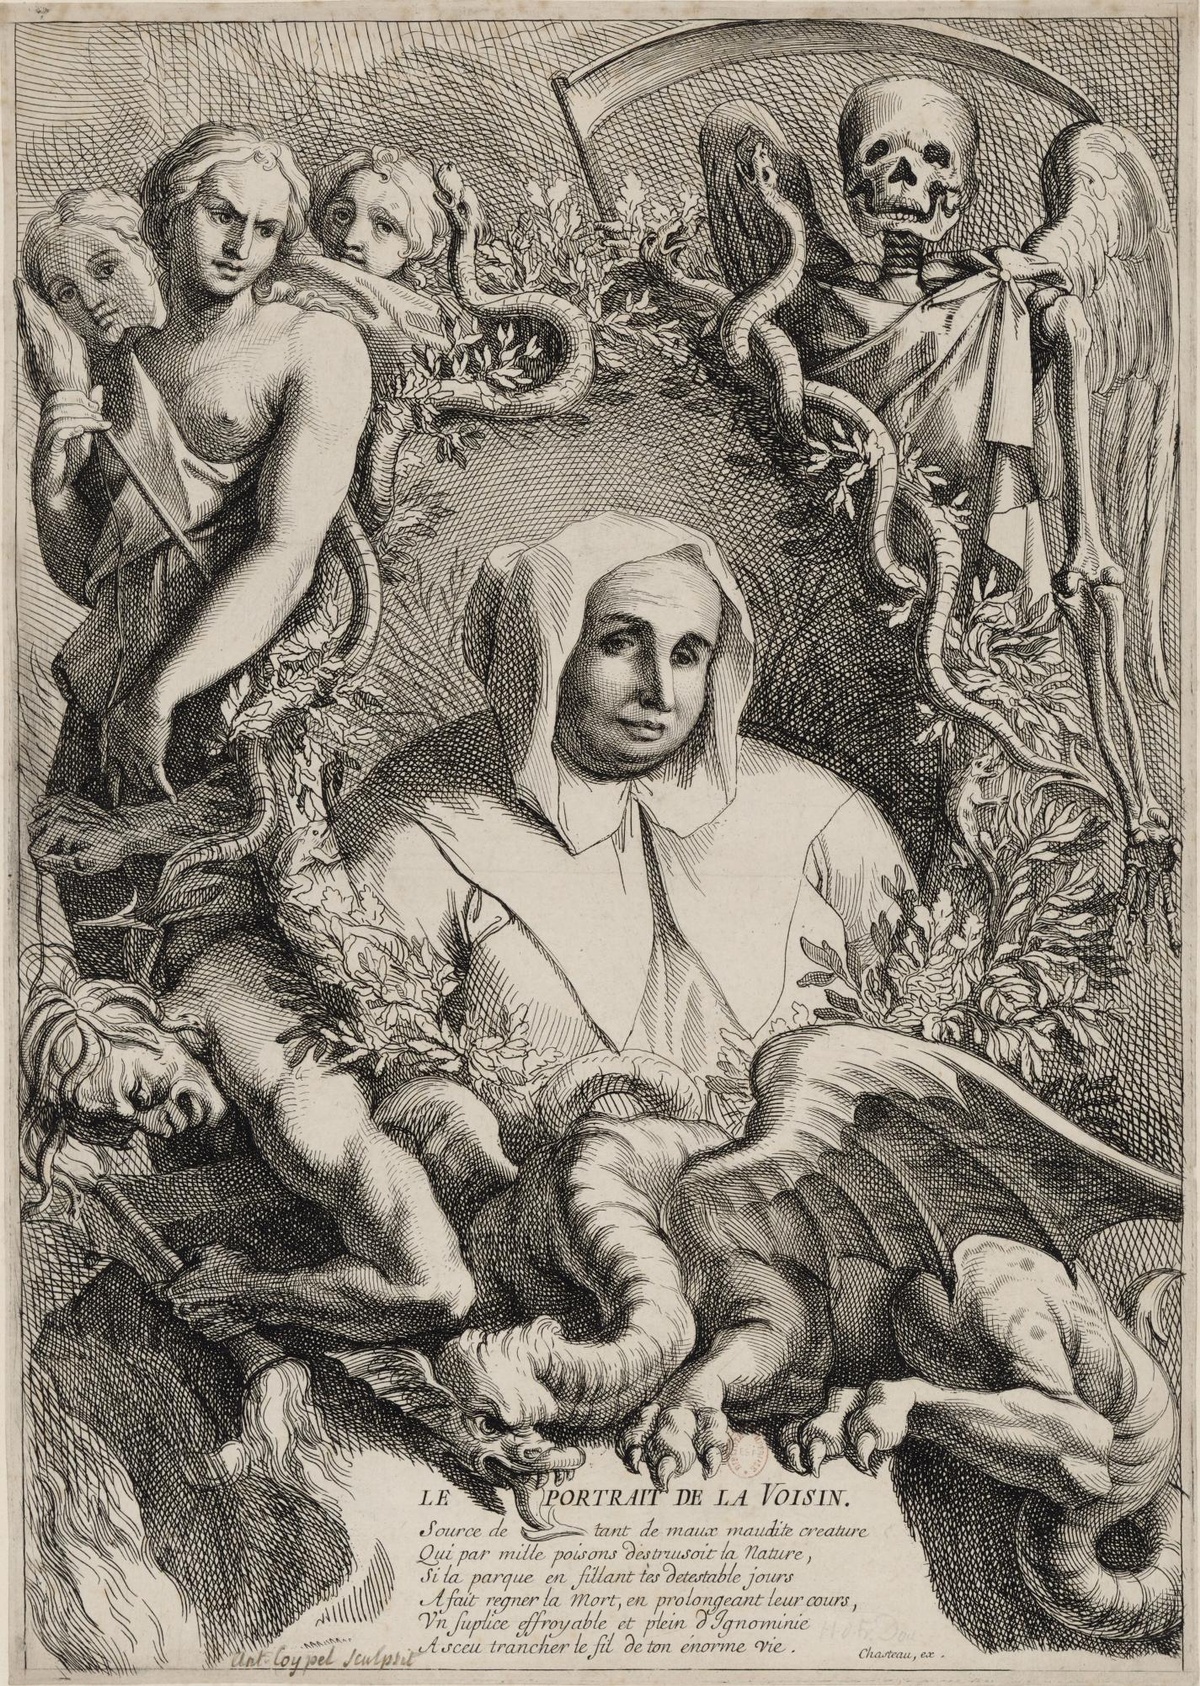 Zeichnung von einer Frau mit weißer Kapuze und Mantel, rundherum Schlangen, ein Drache und mystische Menschenfiguren sowie ein Skelett mit Flügeln und Sense.   © Wikimedia 